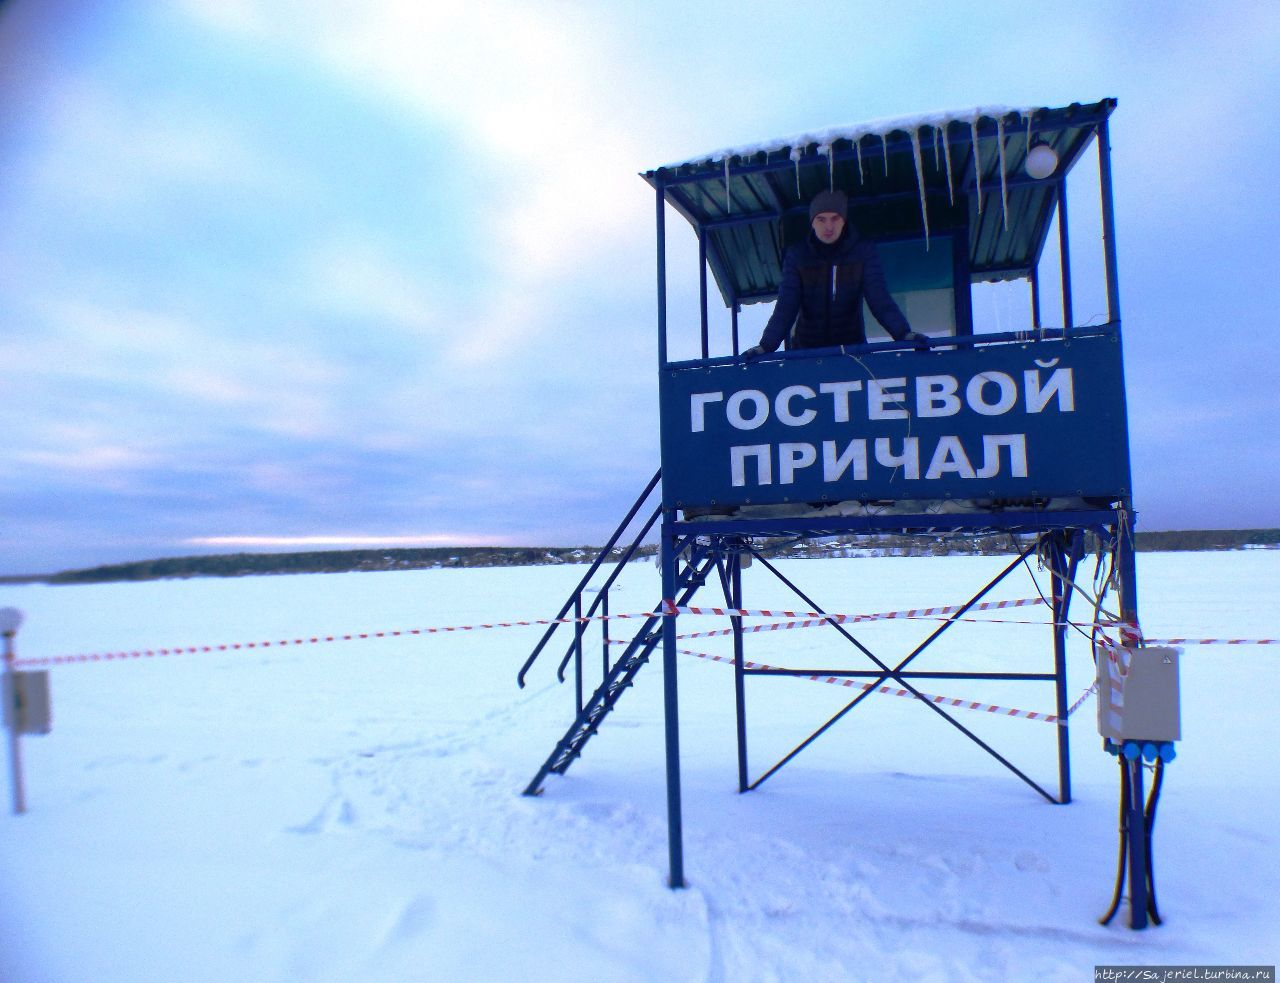 Яхты на зимовке Мытищи, Россия